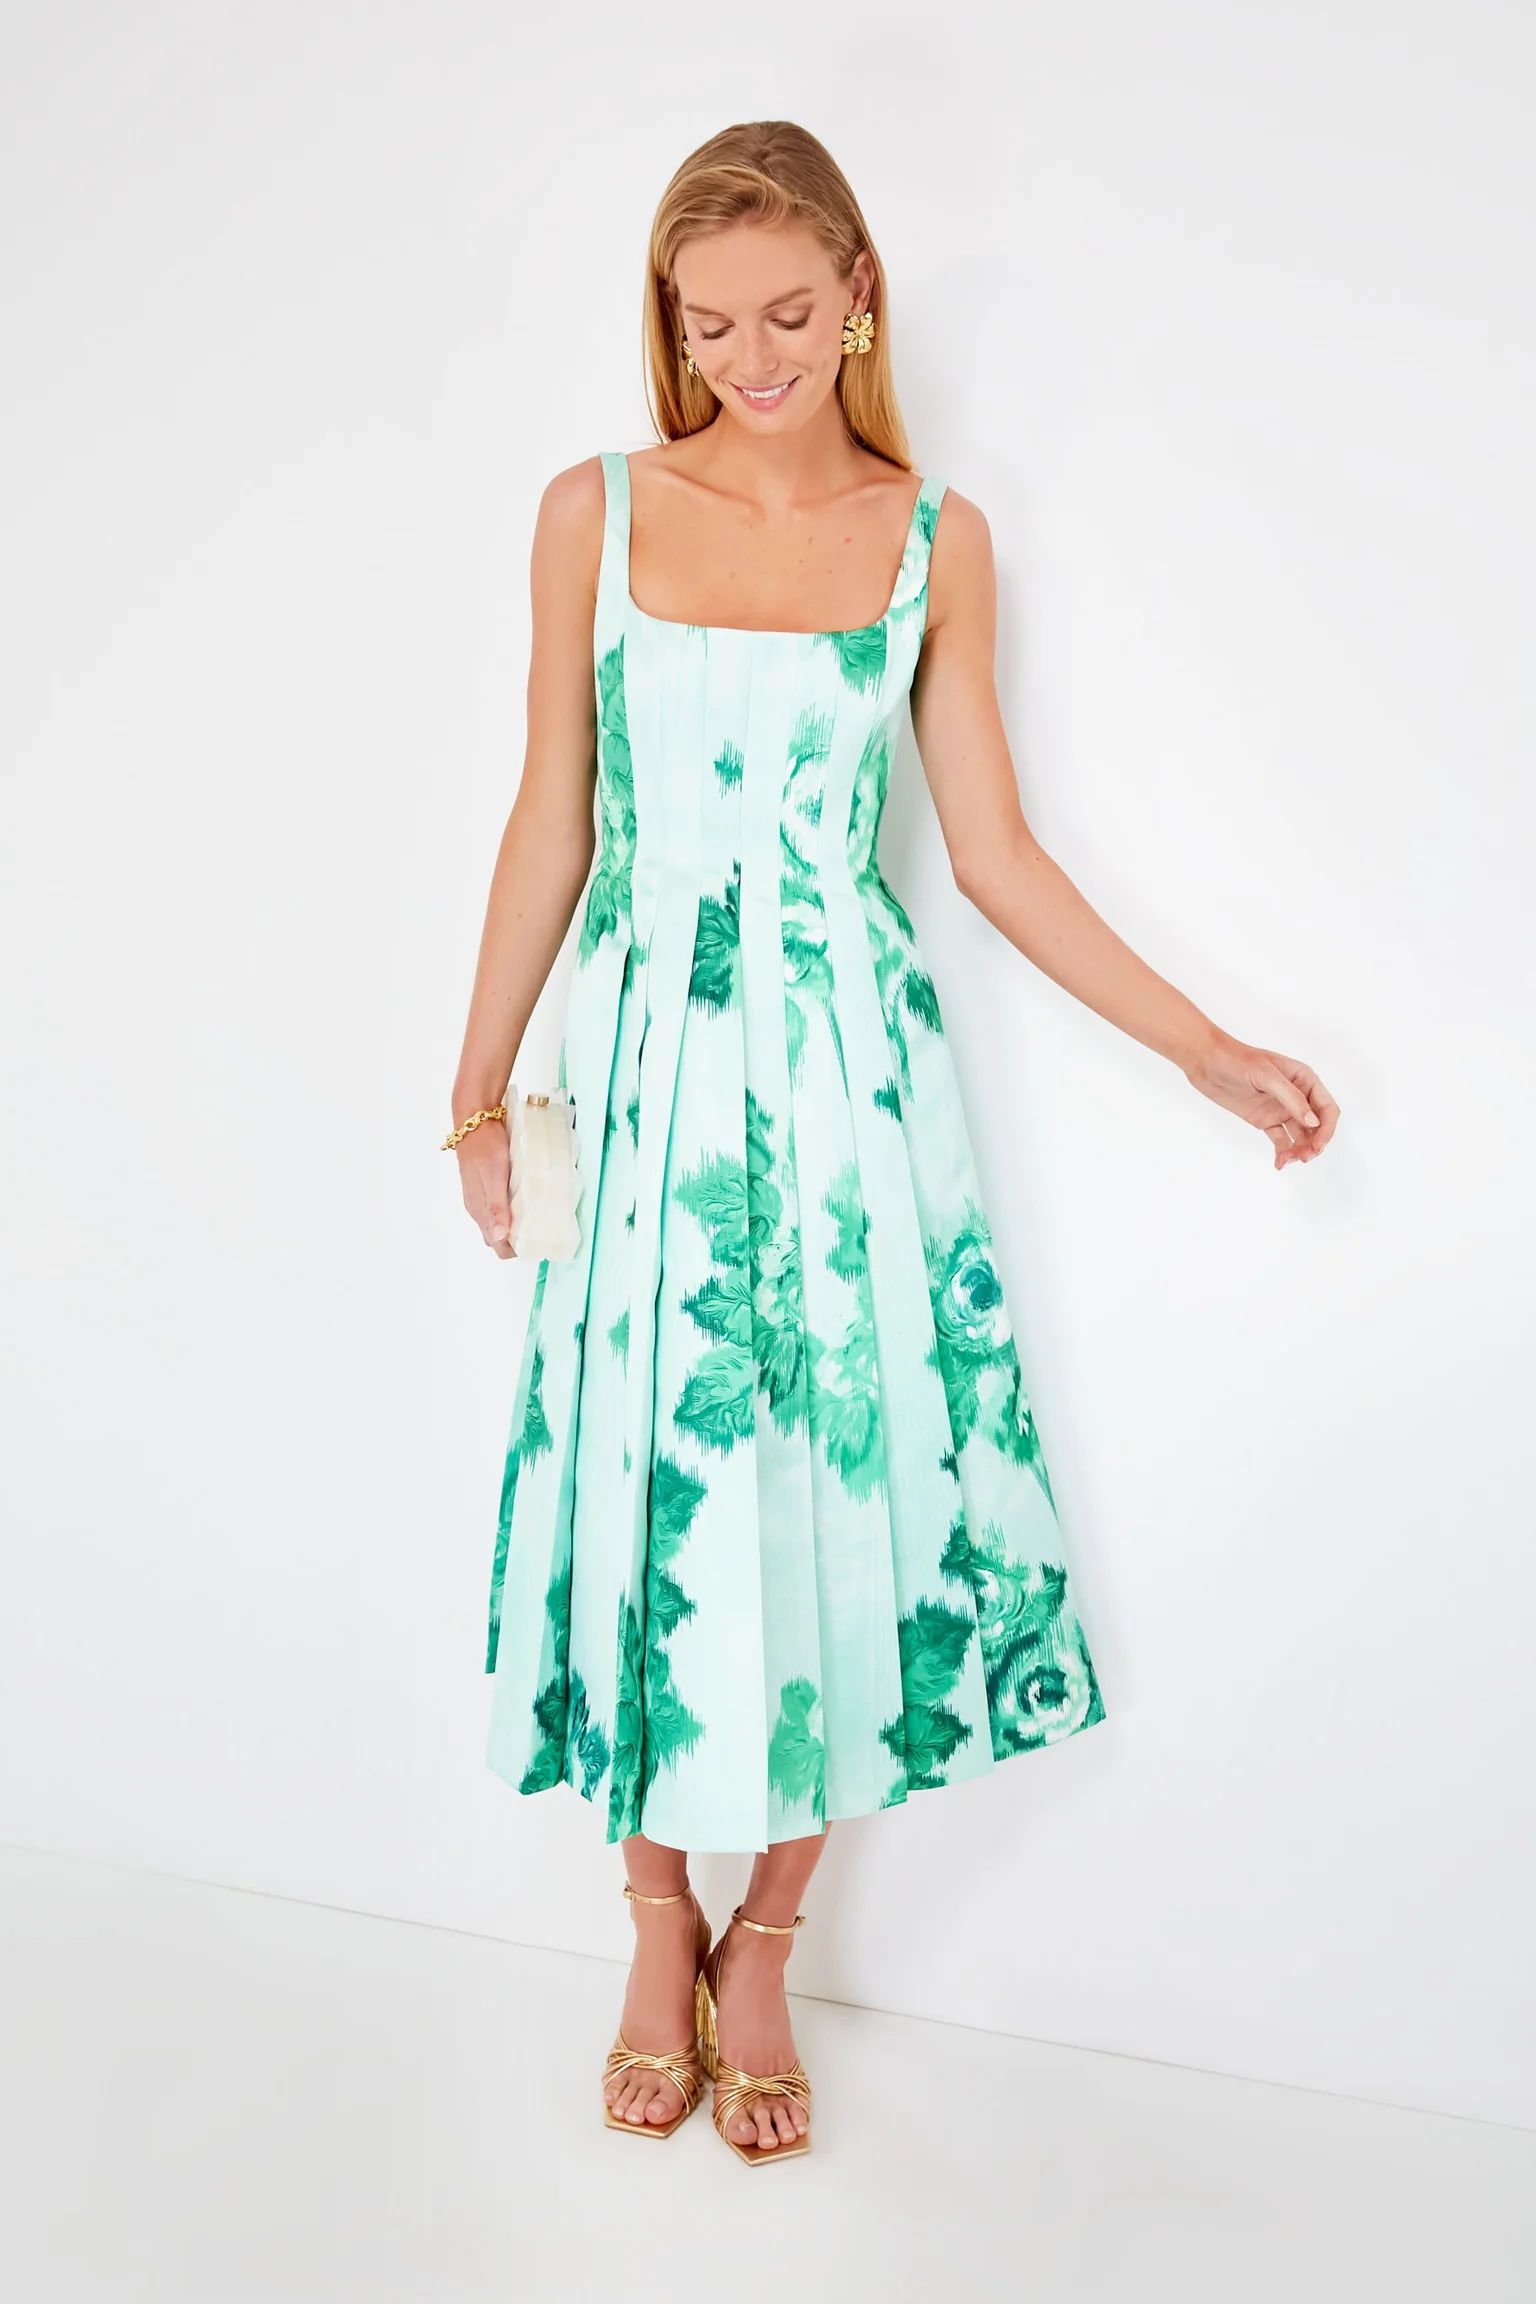 Giant Moire Roses Emerald Adele Dress | Tuckernuck (US)